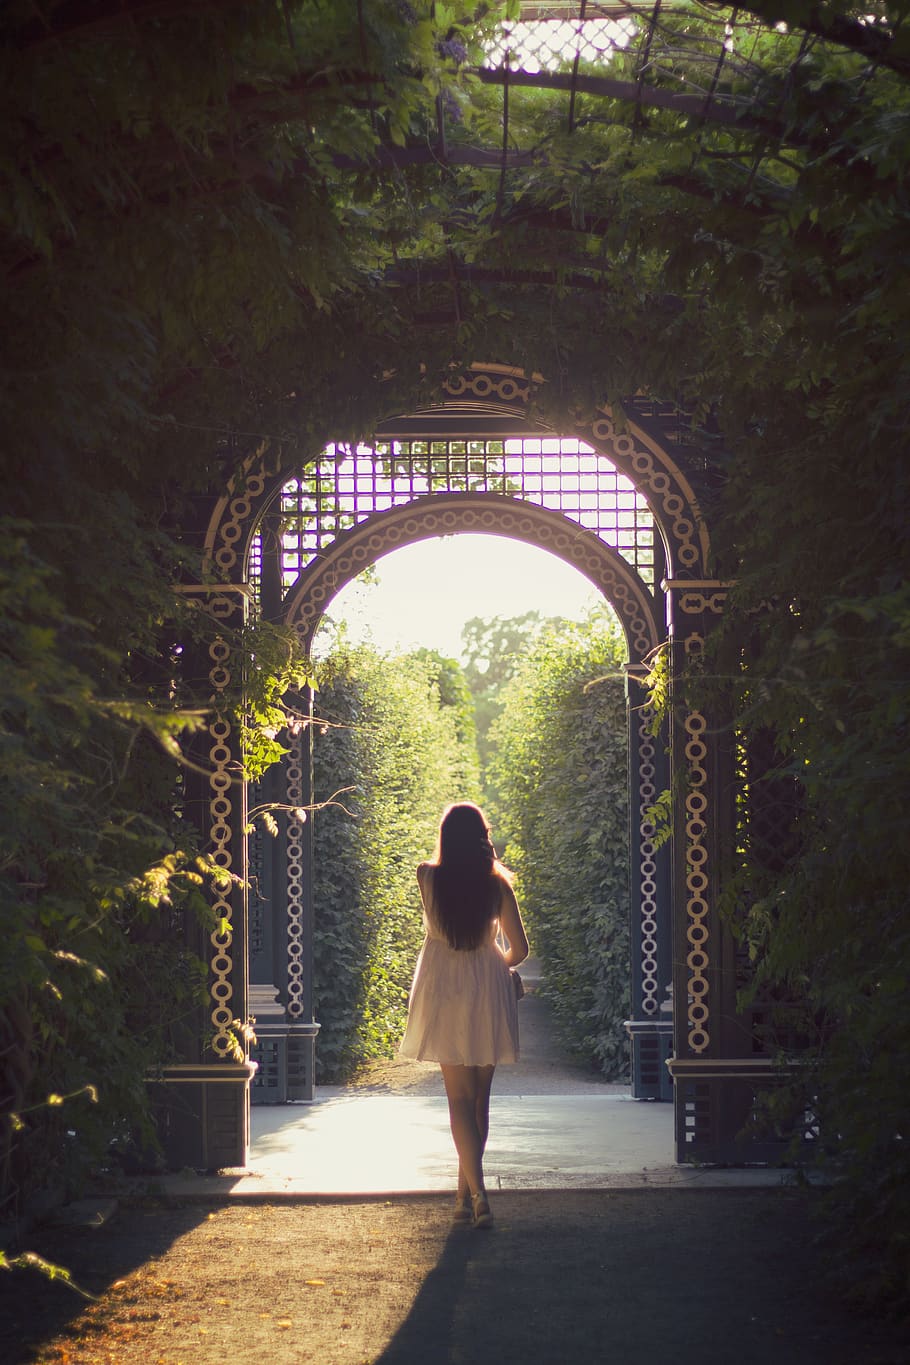 HD wallpaper: woman walking alone on pathway, garden, outdoors